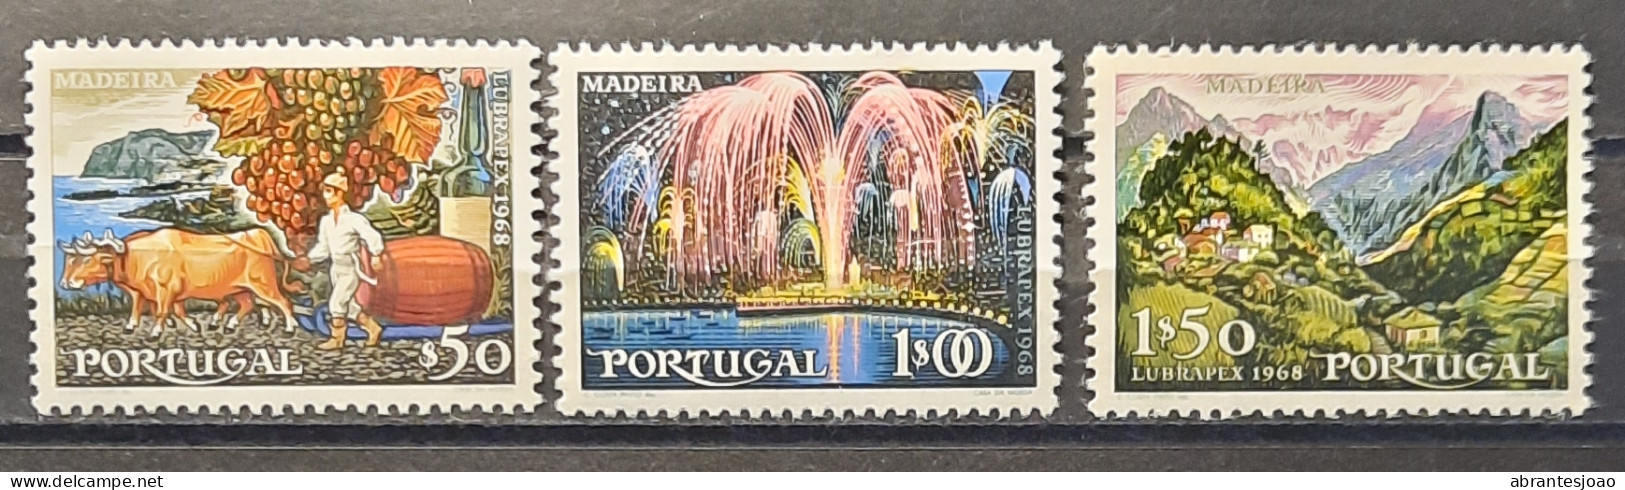 1698 - Portugal - LUBRAPEX Madeira - 7 Stamps - Usado